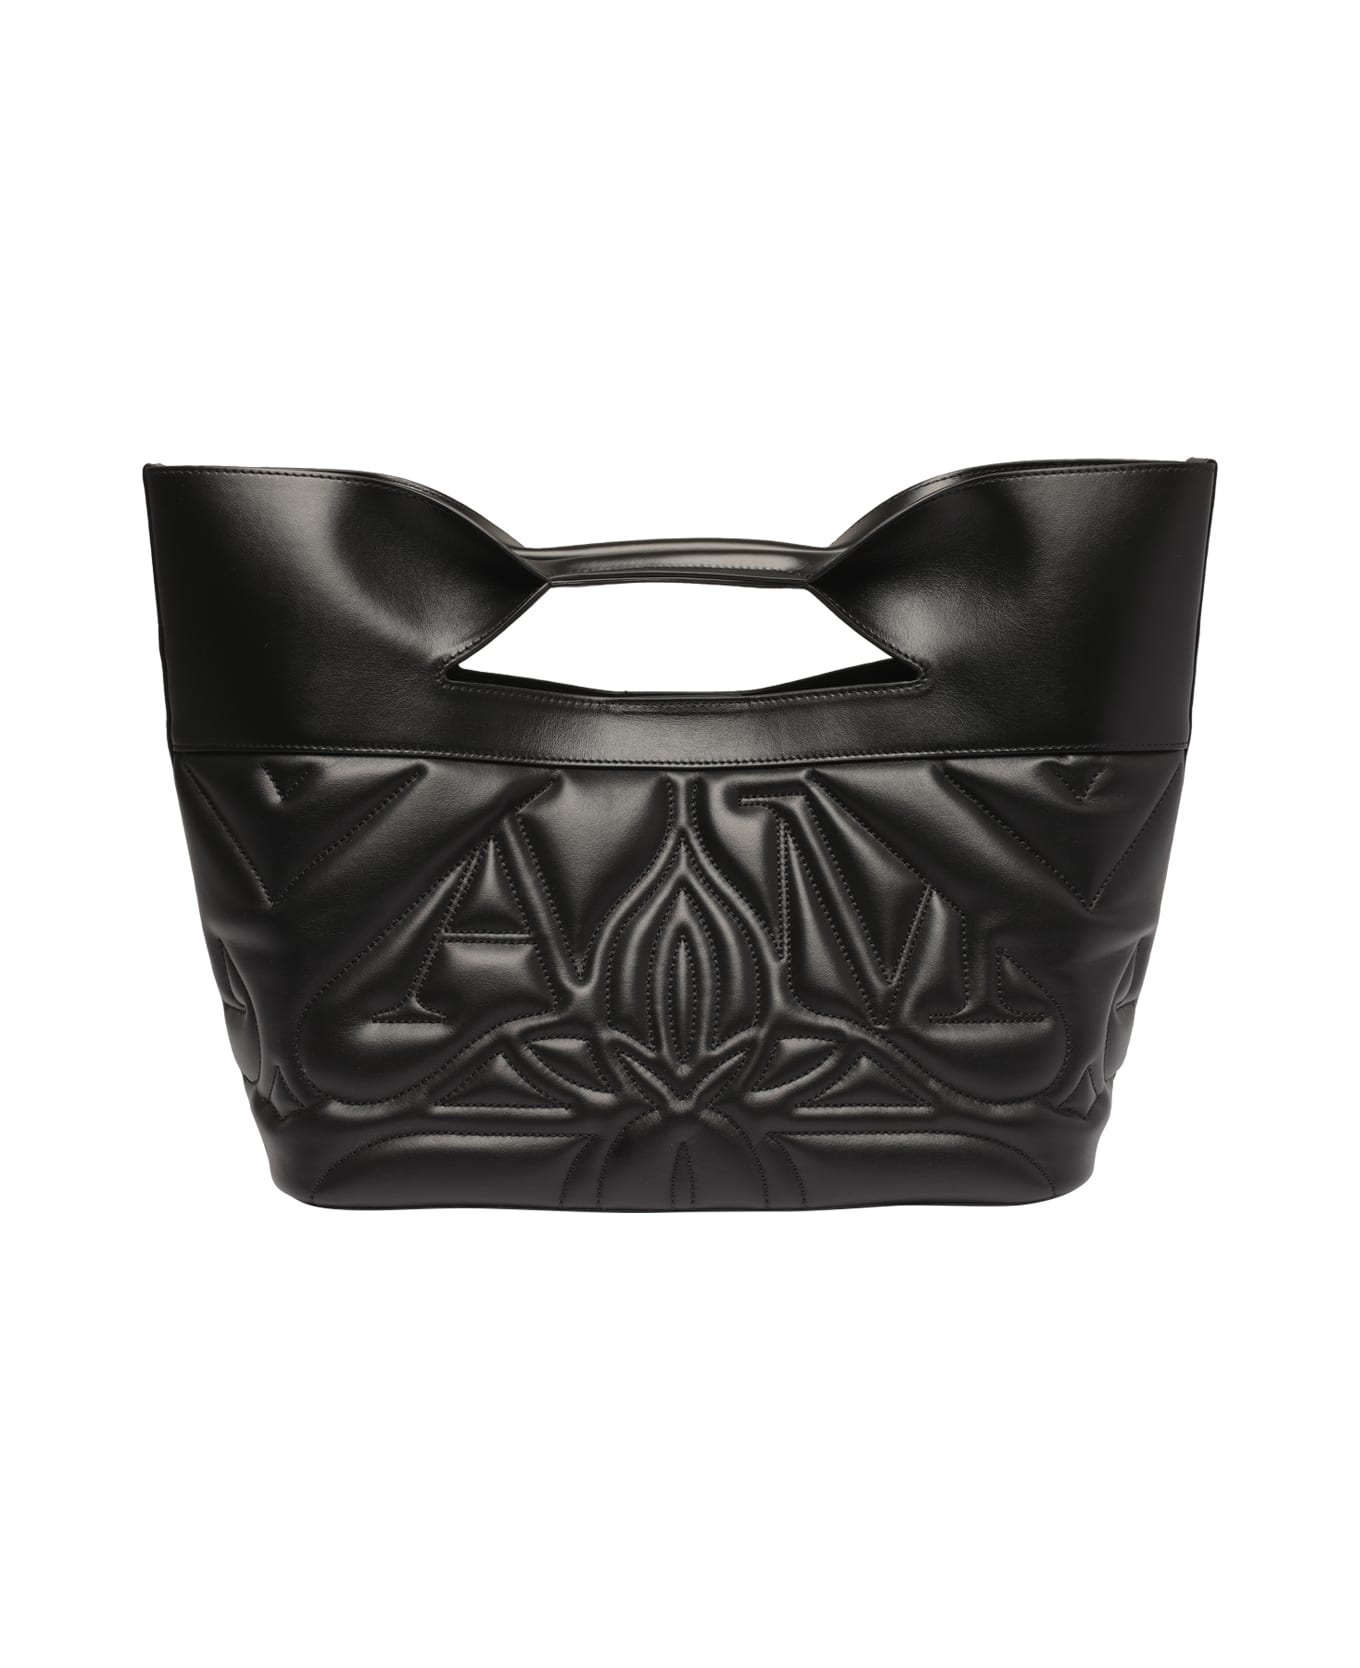 Alexander McQueen The Bow Handbag - Black